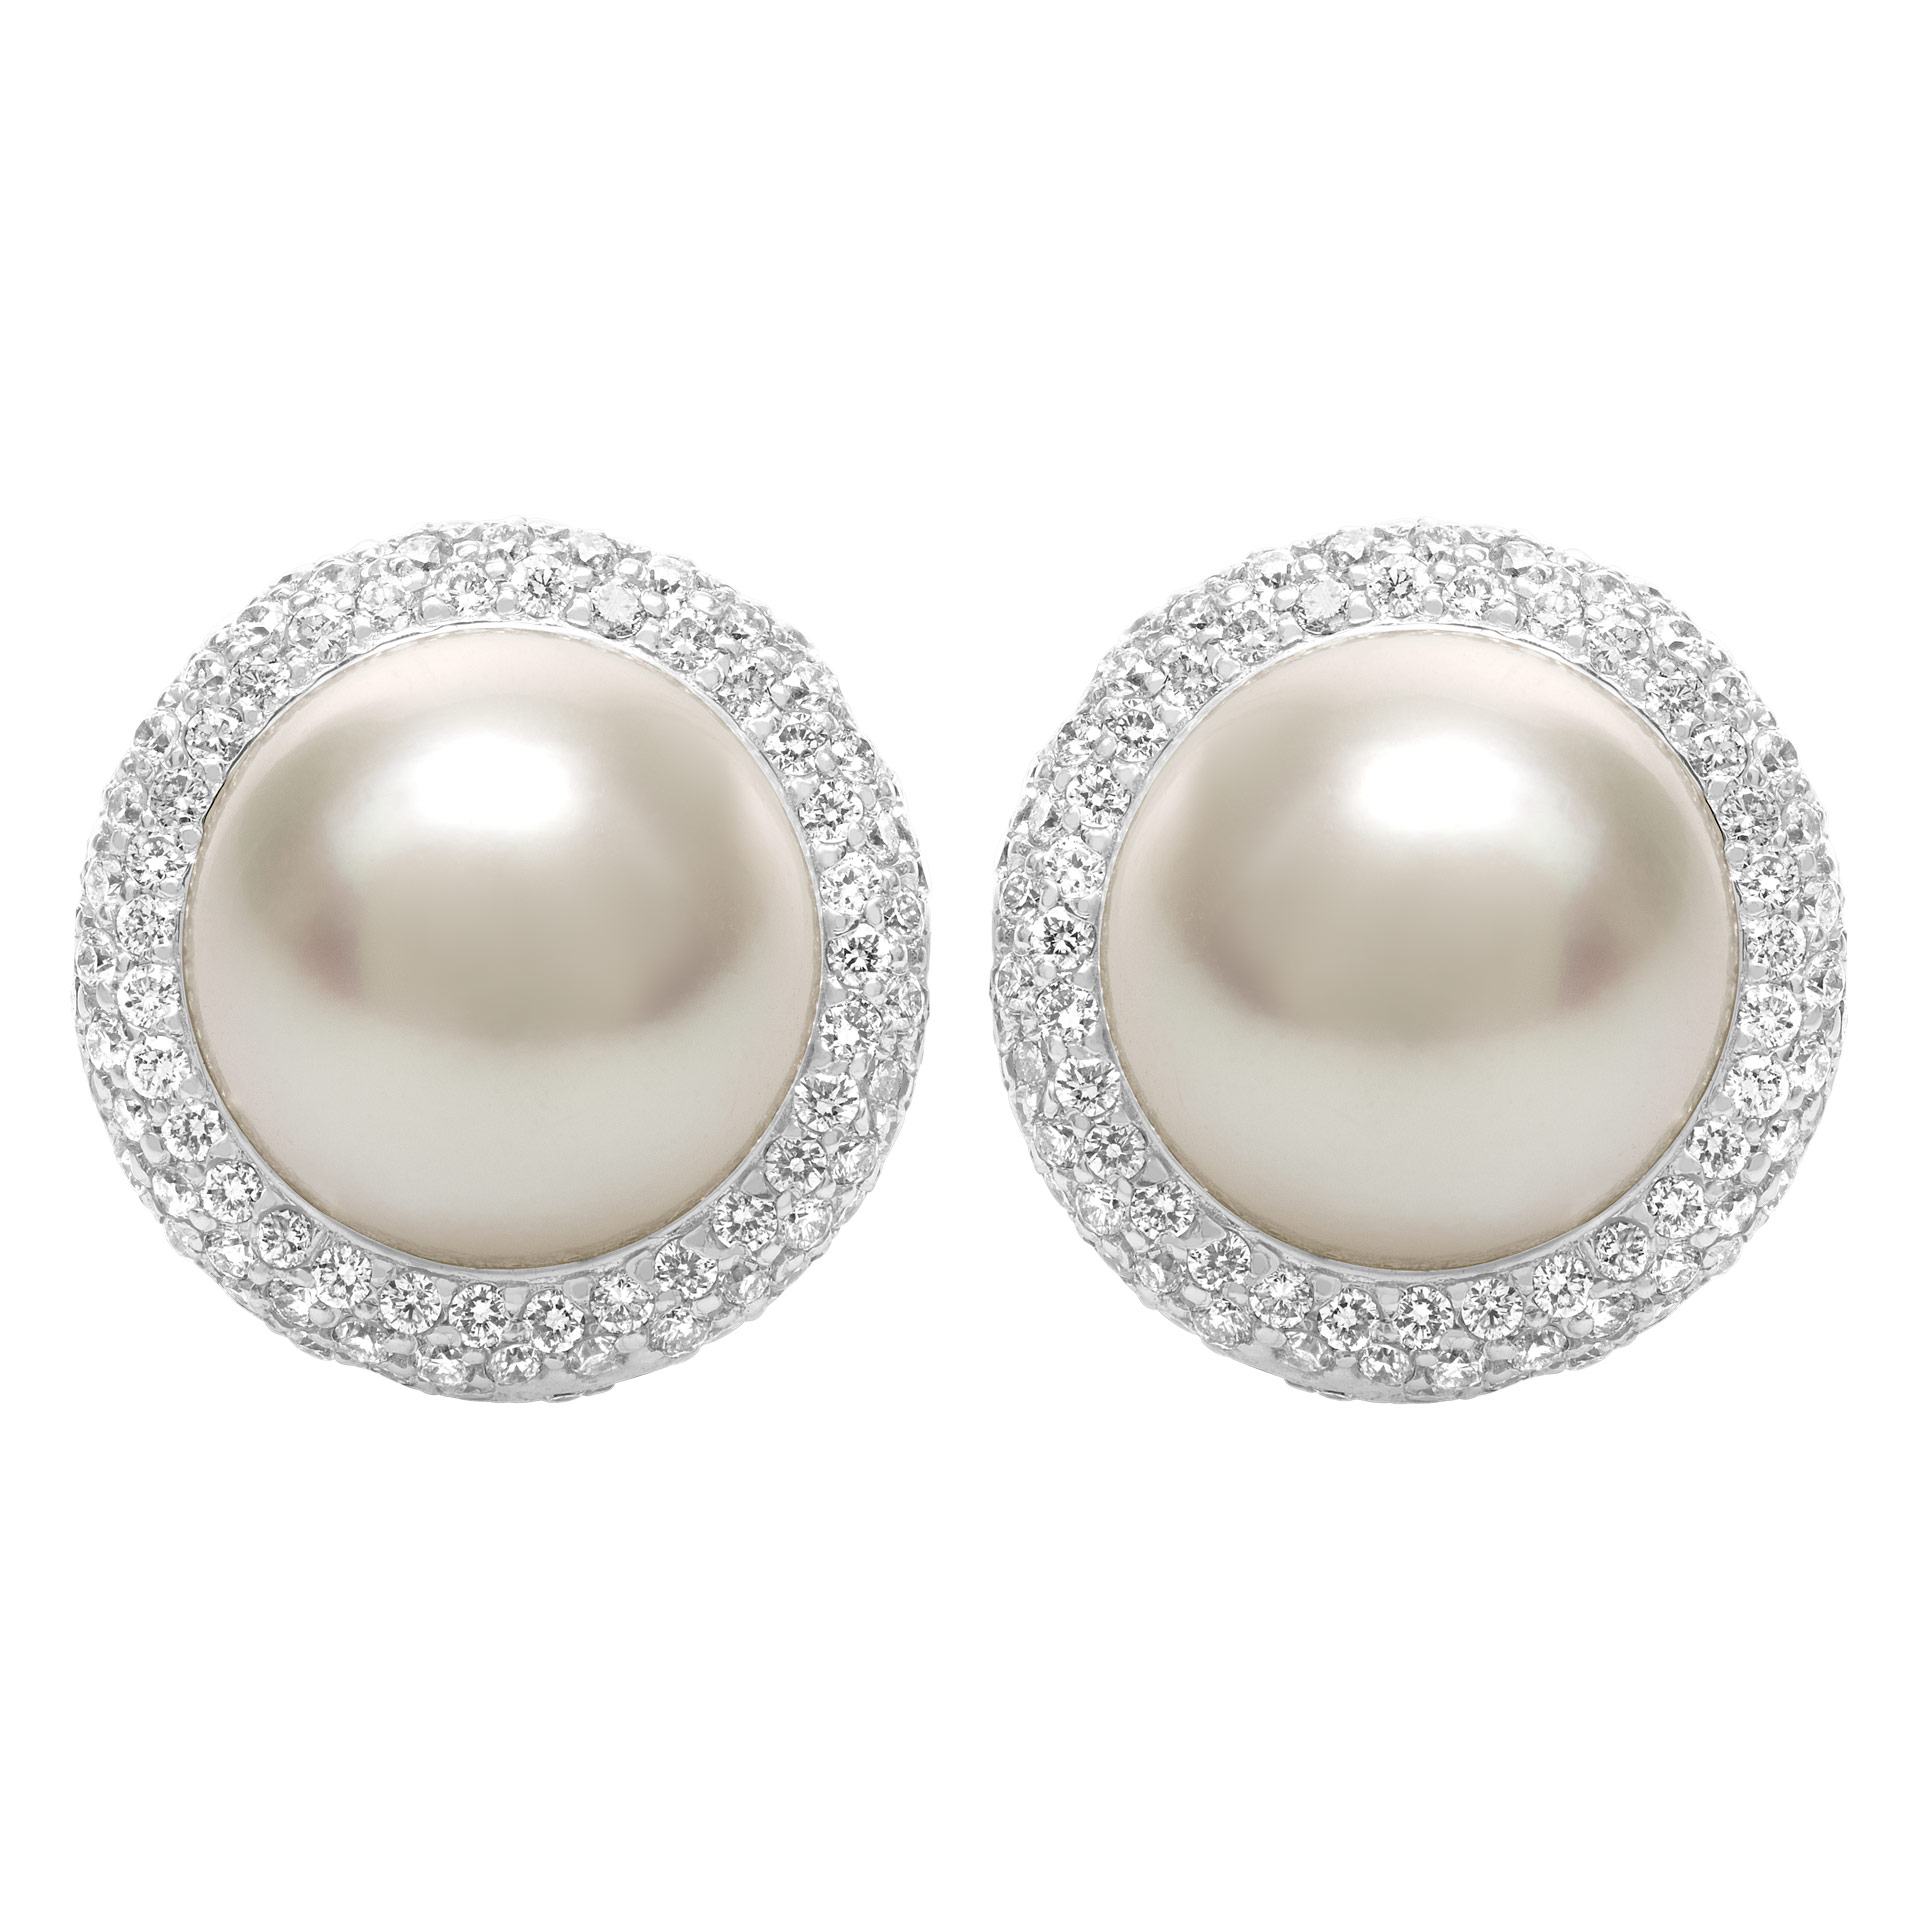 South Sea Pearl (10.5 x11mm) & diamonds earrings, in 18K white gold.